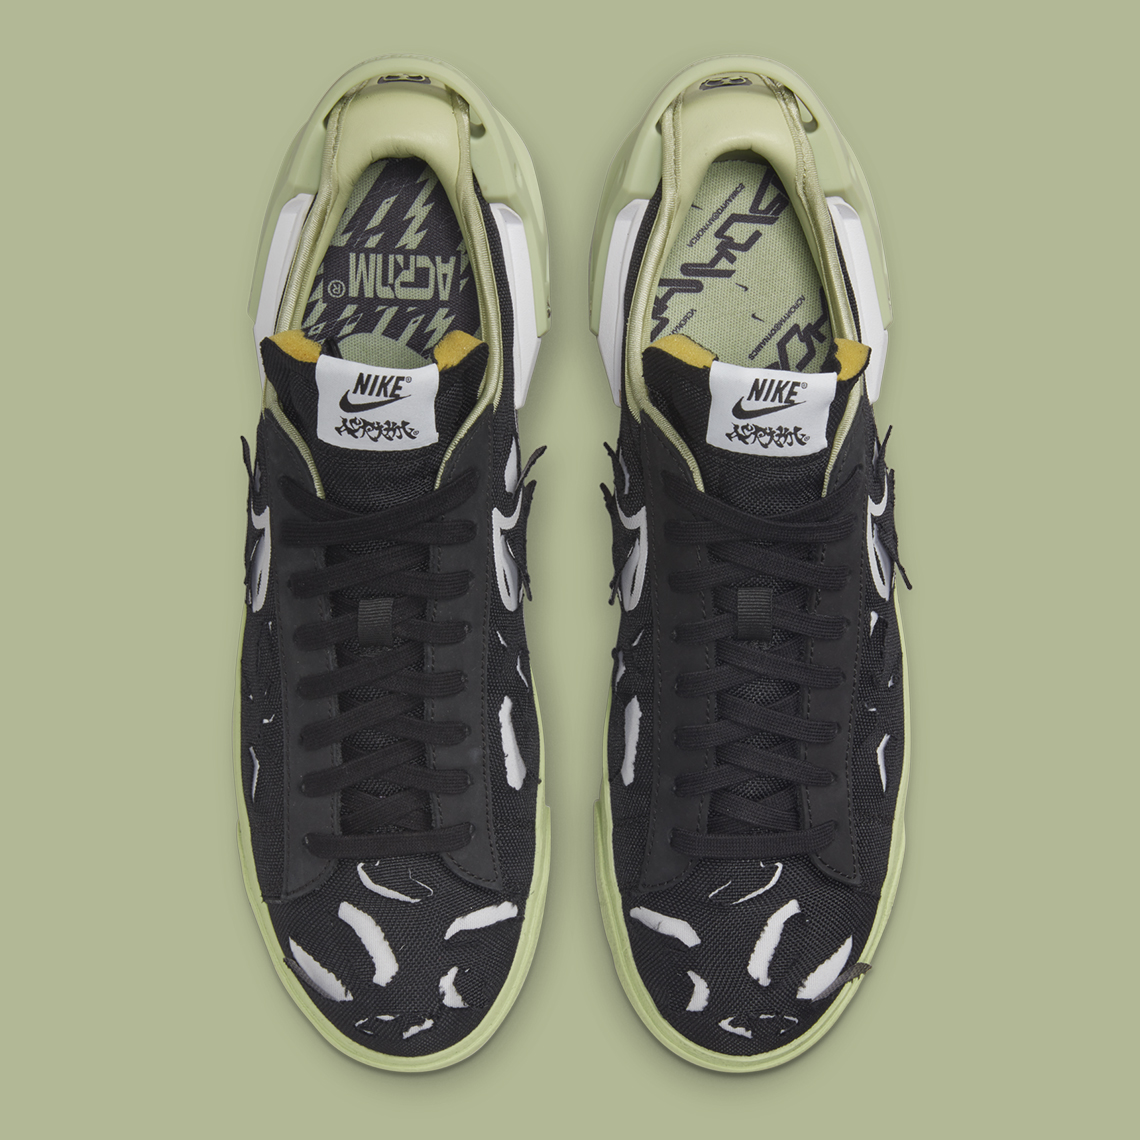 ACRONYM Nike Blazer Low Release Date | SneakerNews.com